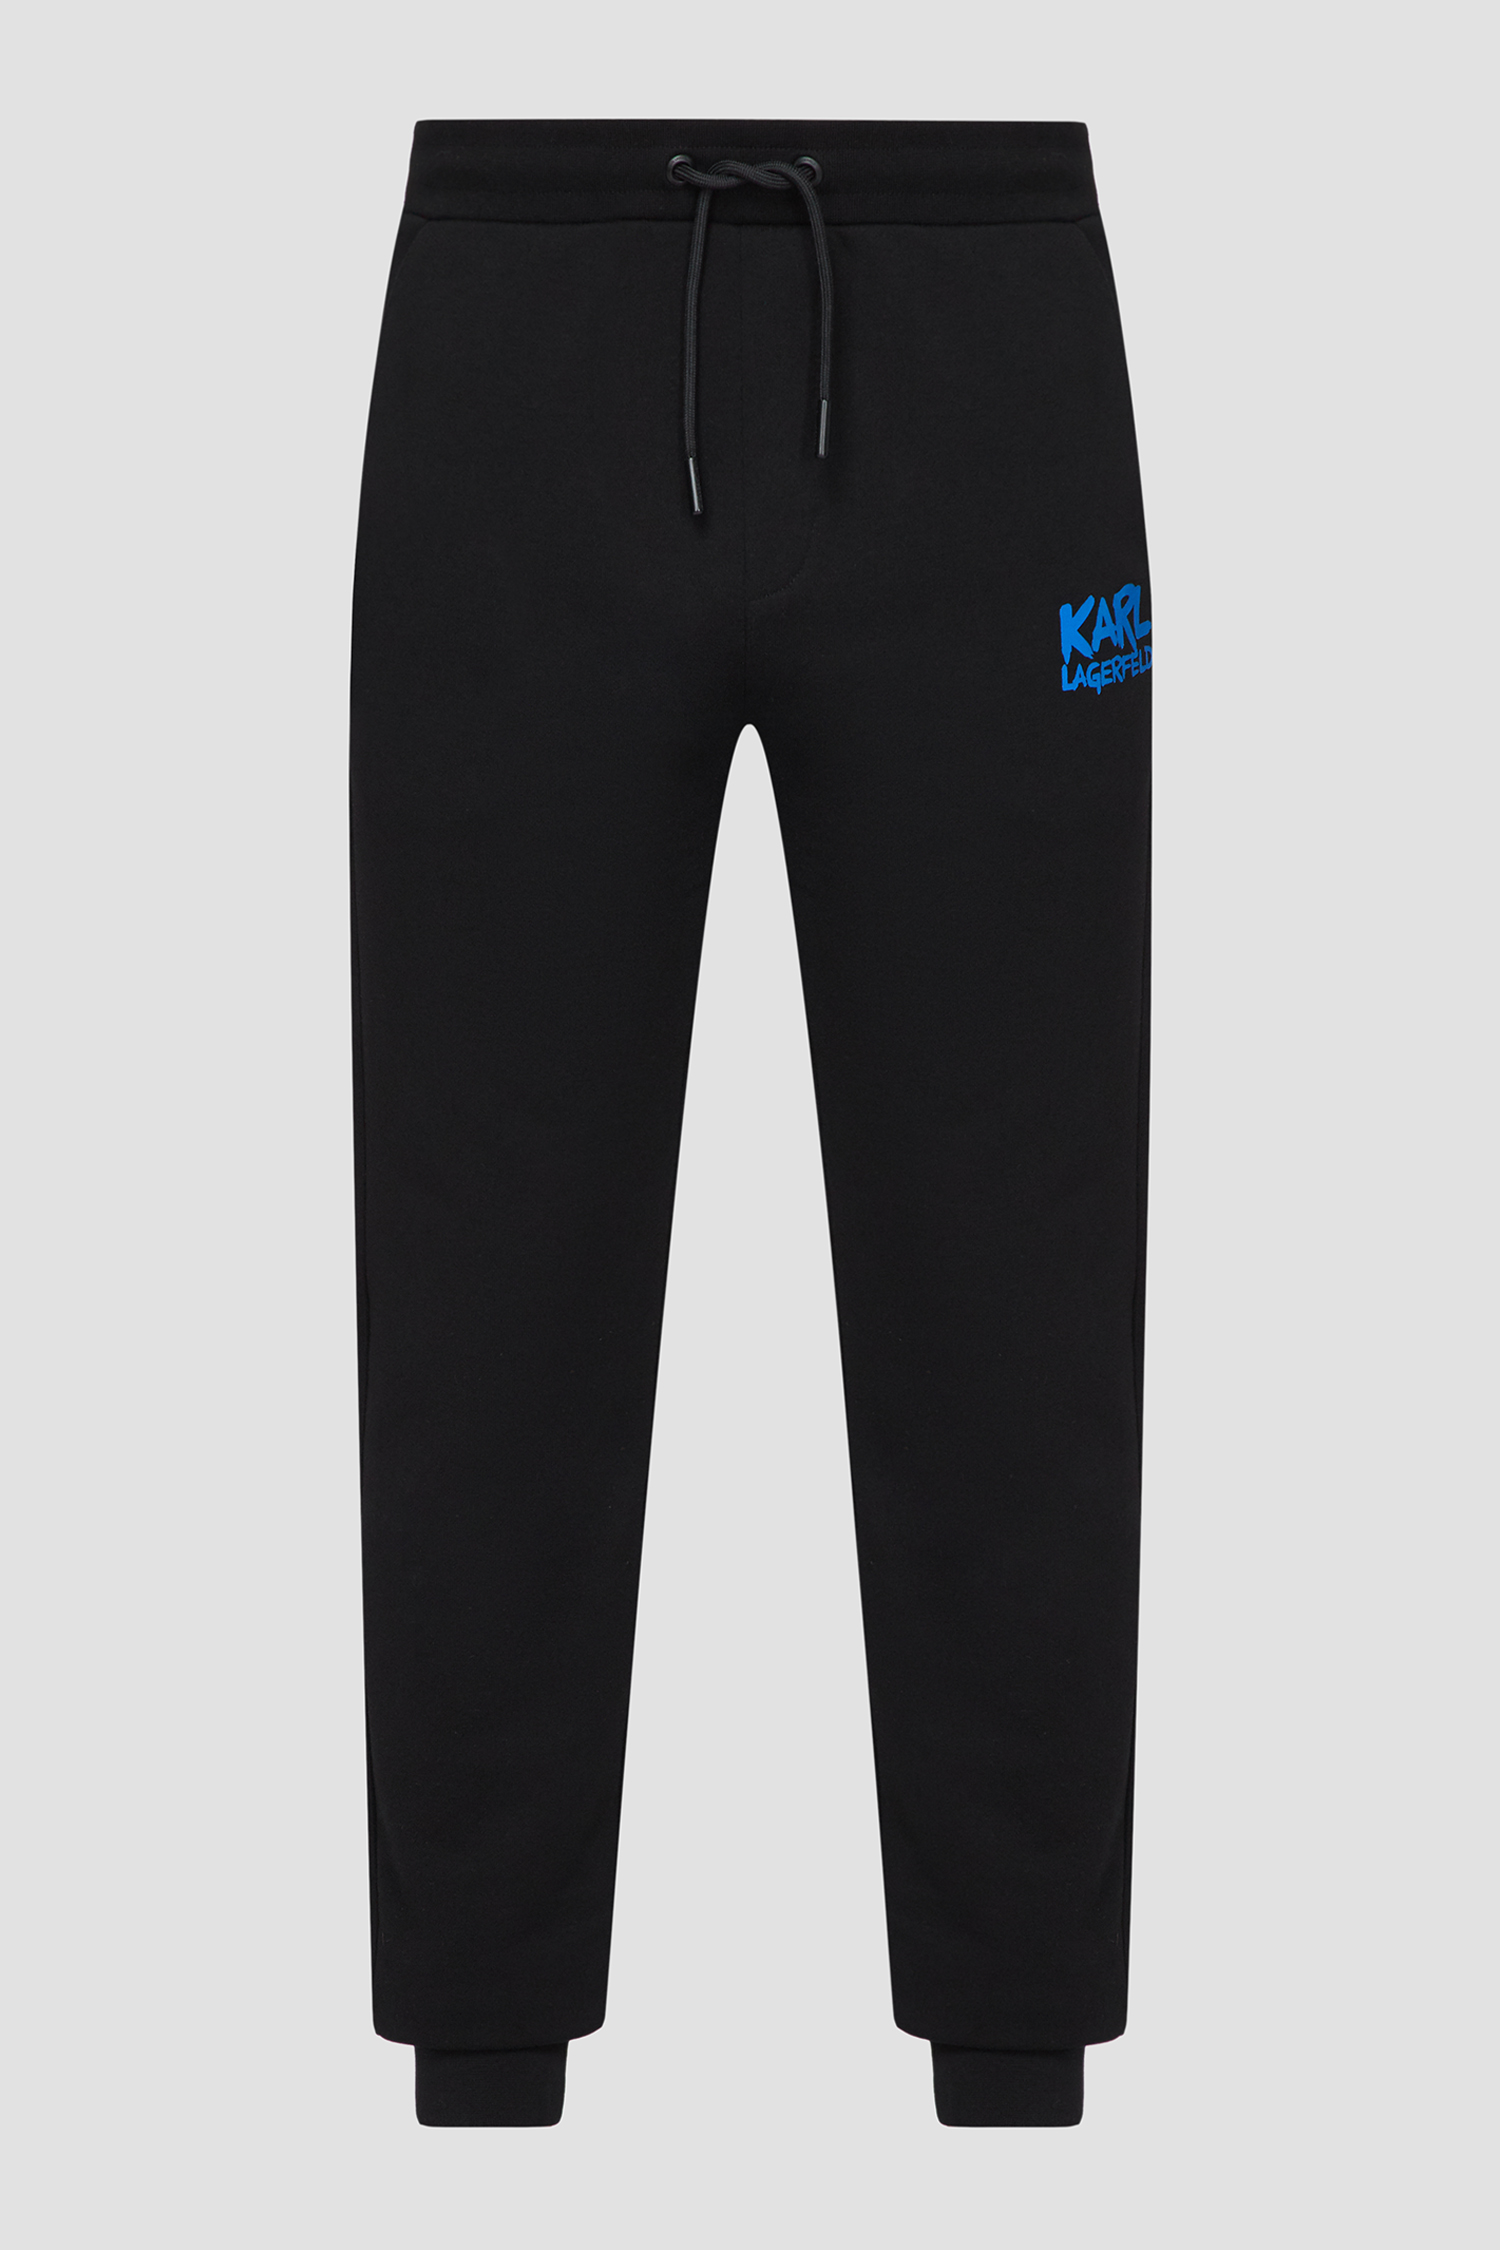 Чоловічі чорні спортивні штани Karl Lagerfeld 531900.705081;996